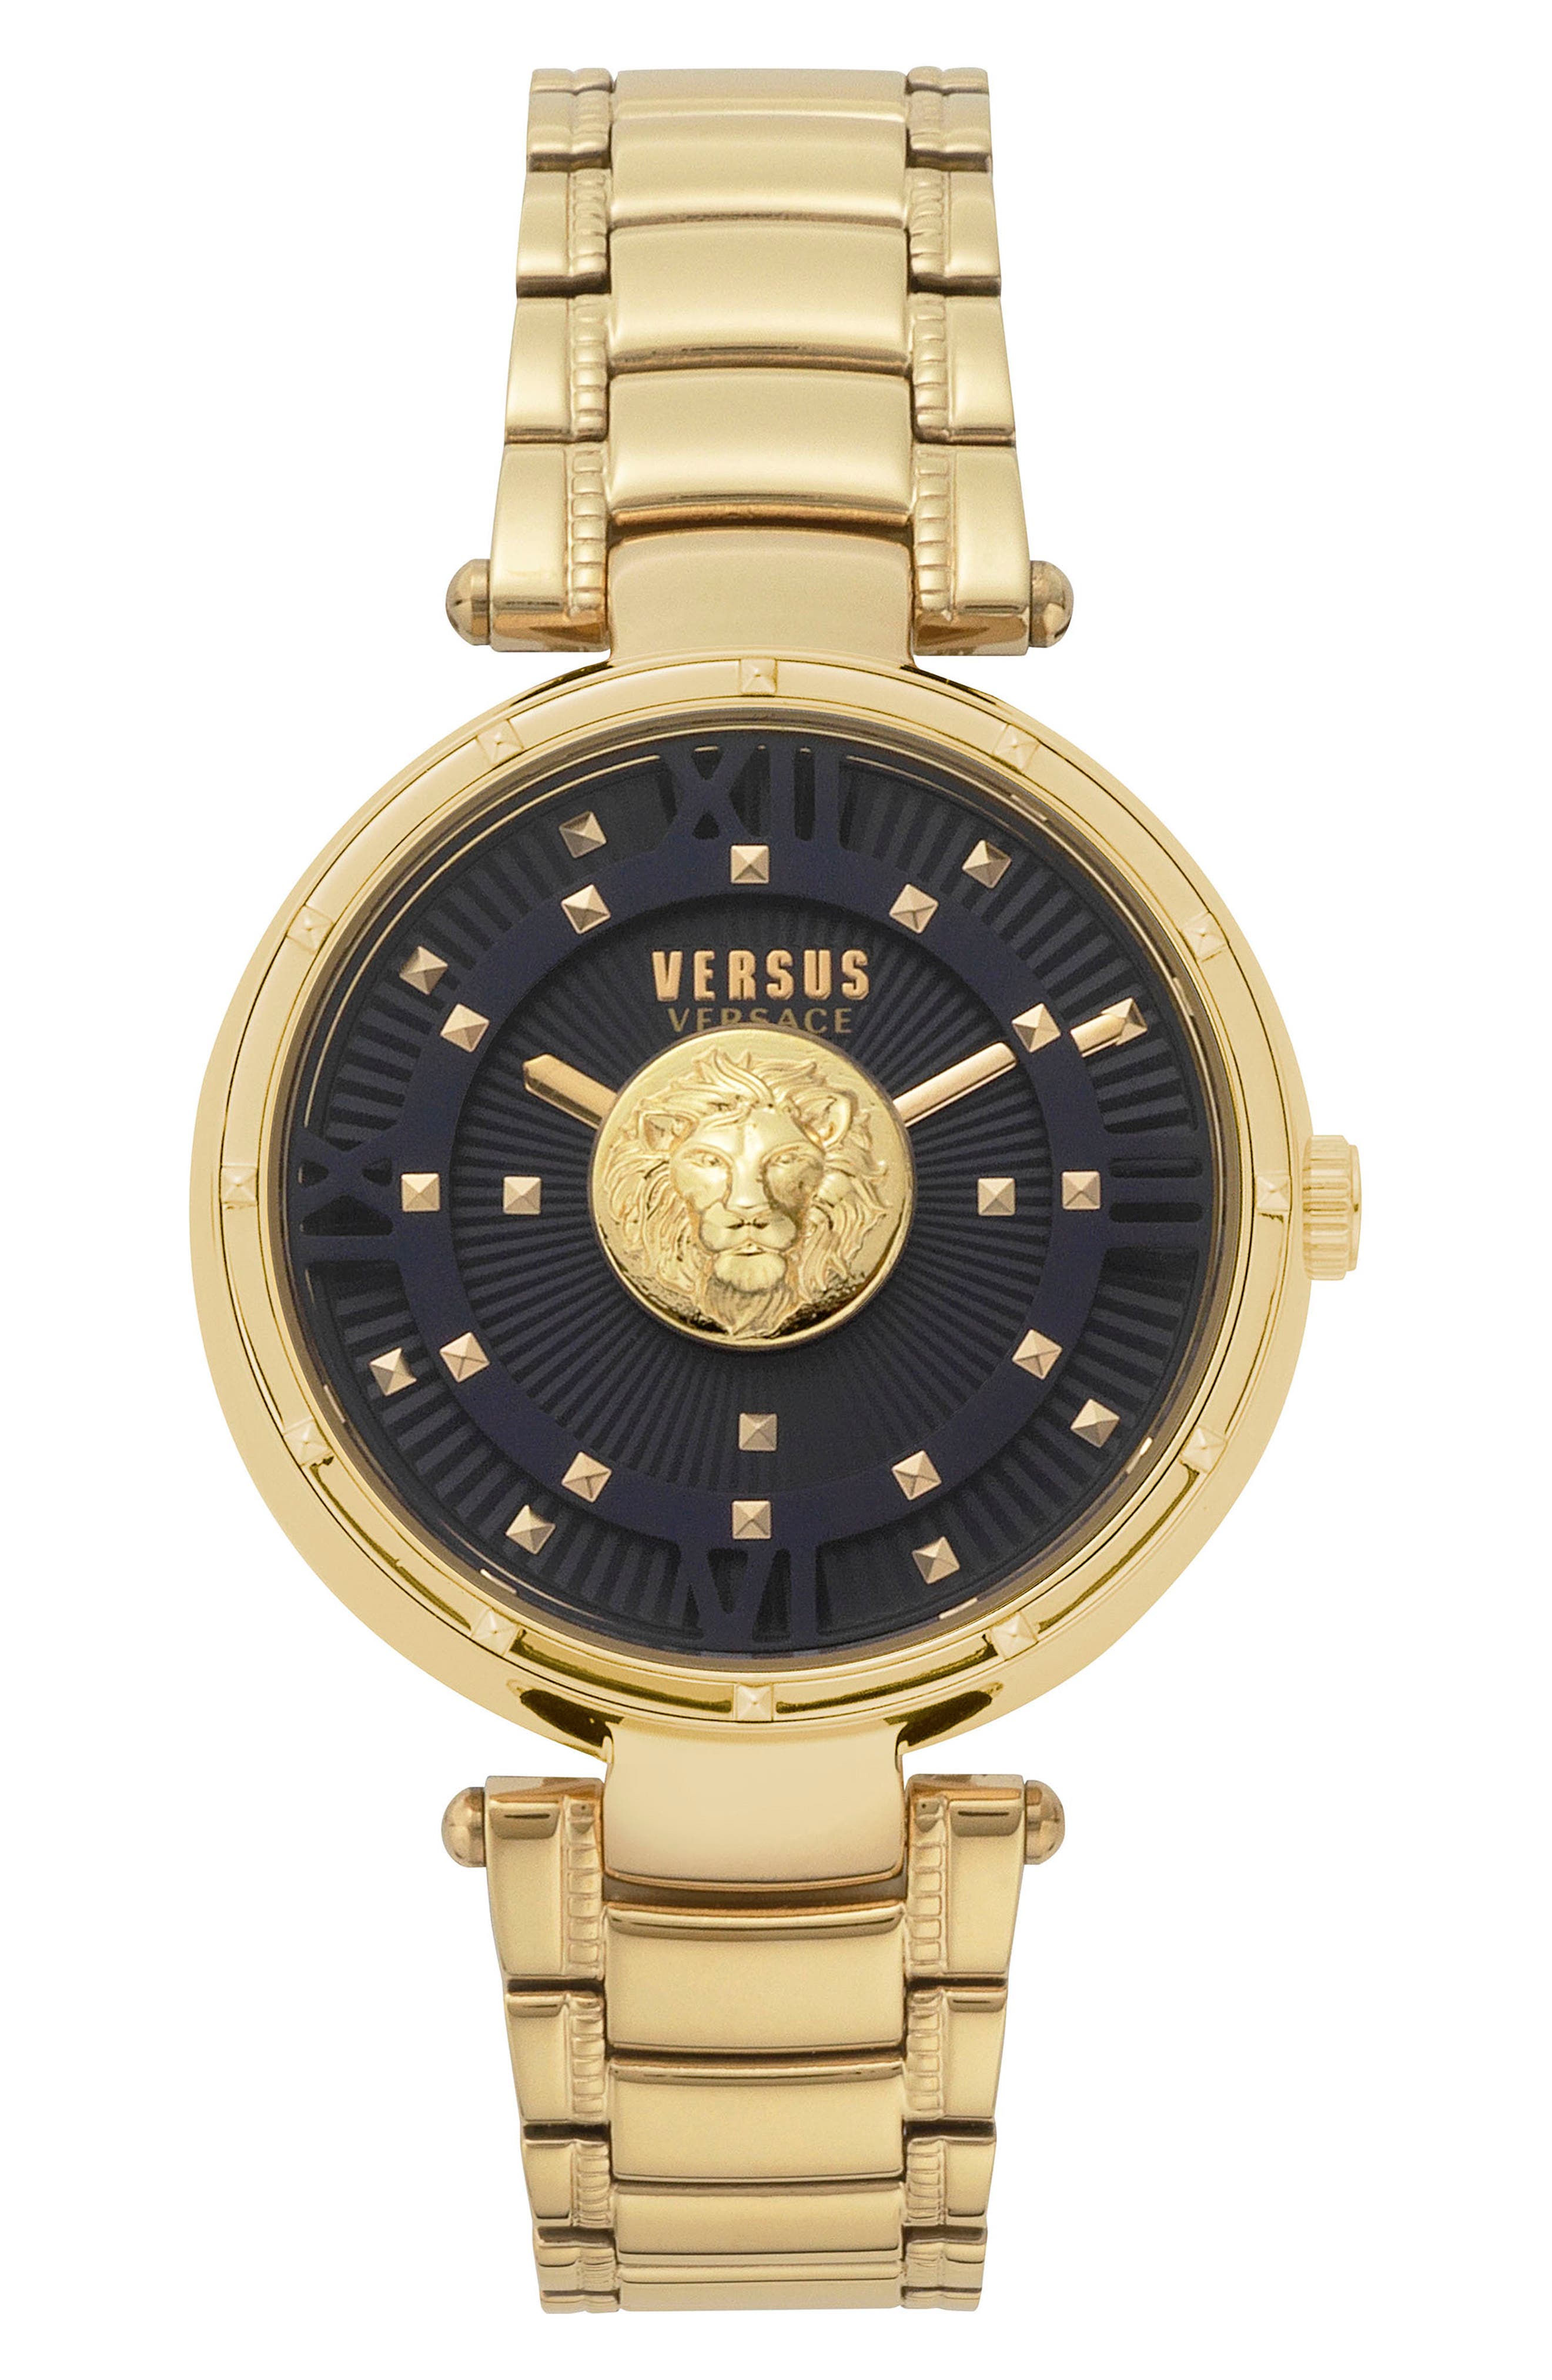 versus versace women's watch